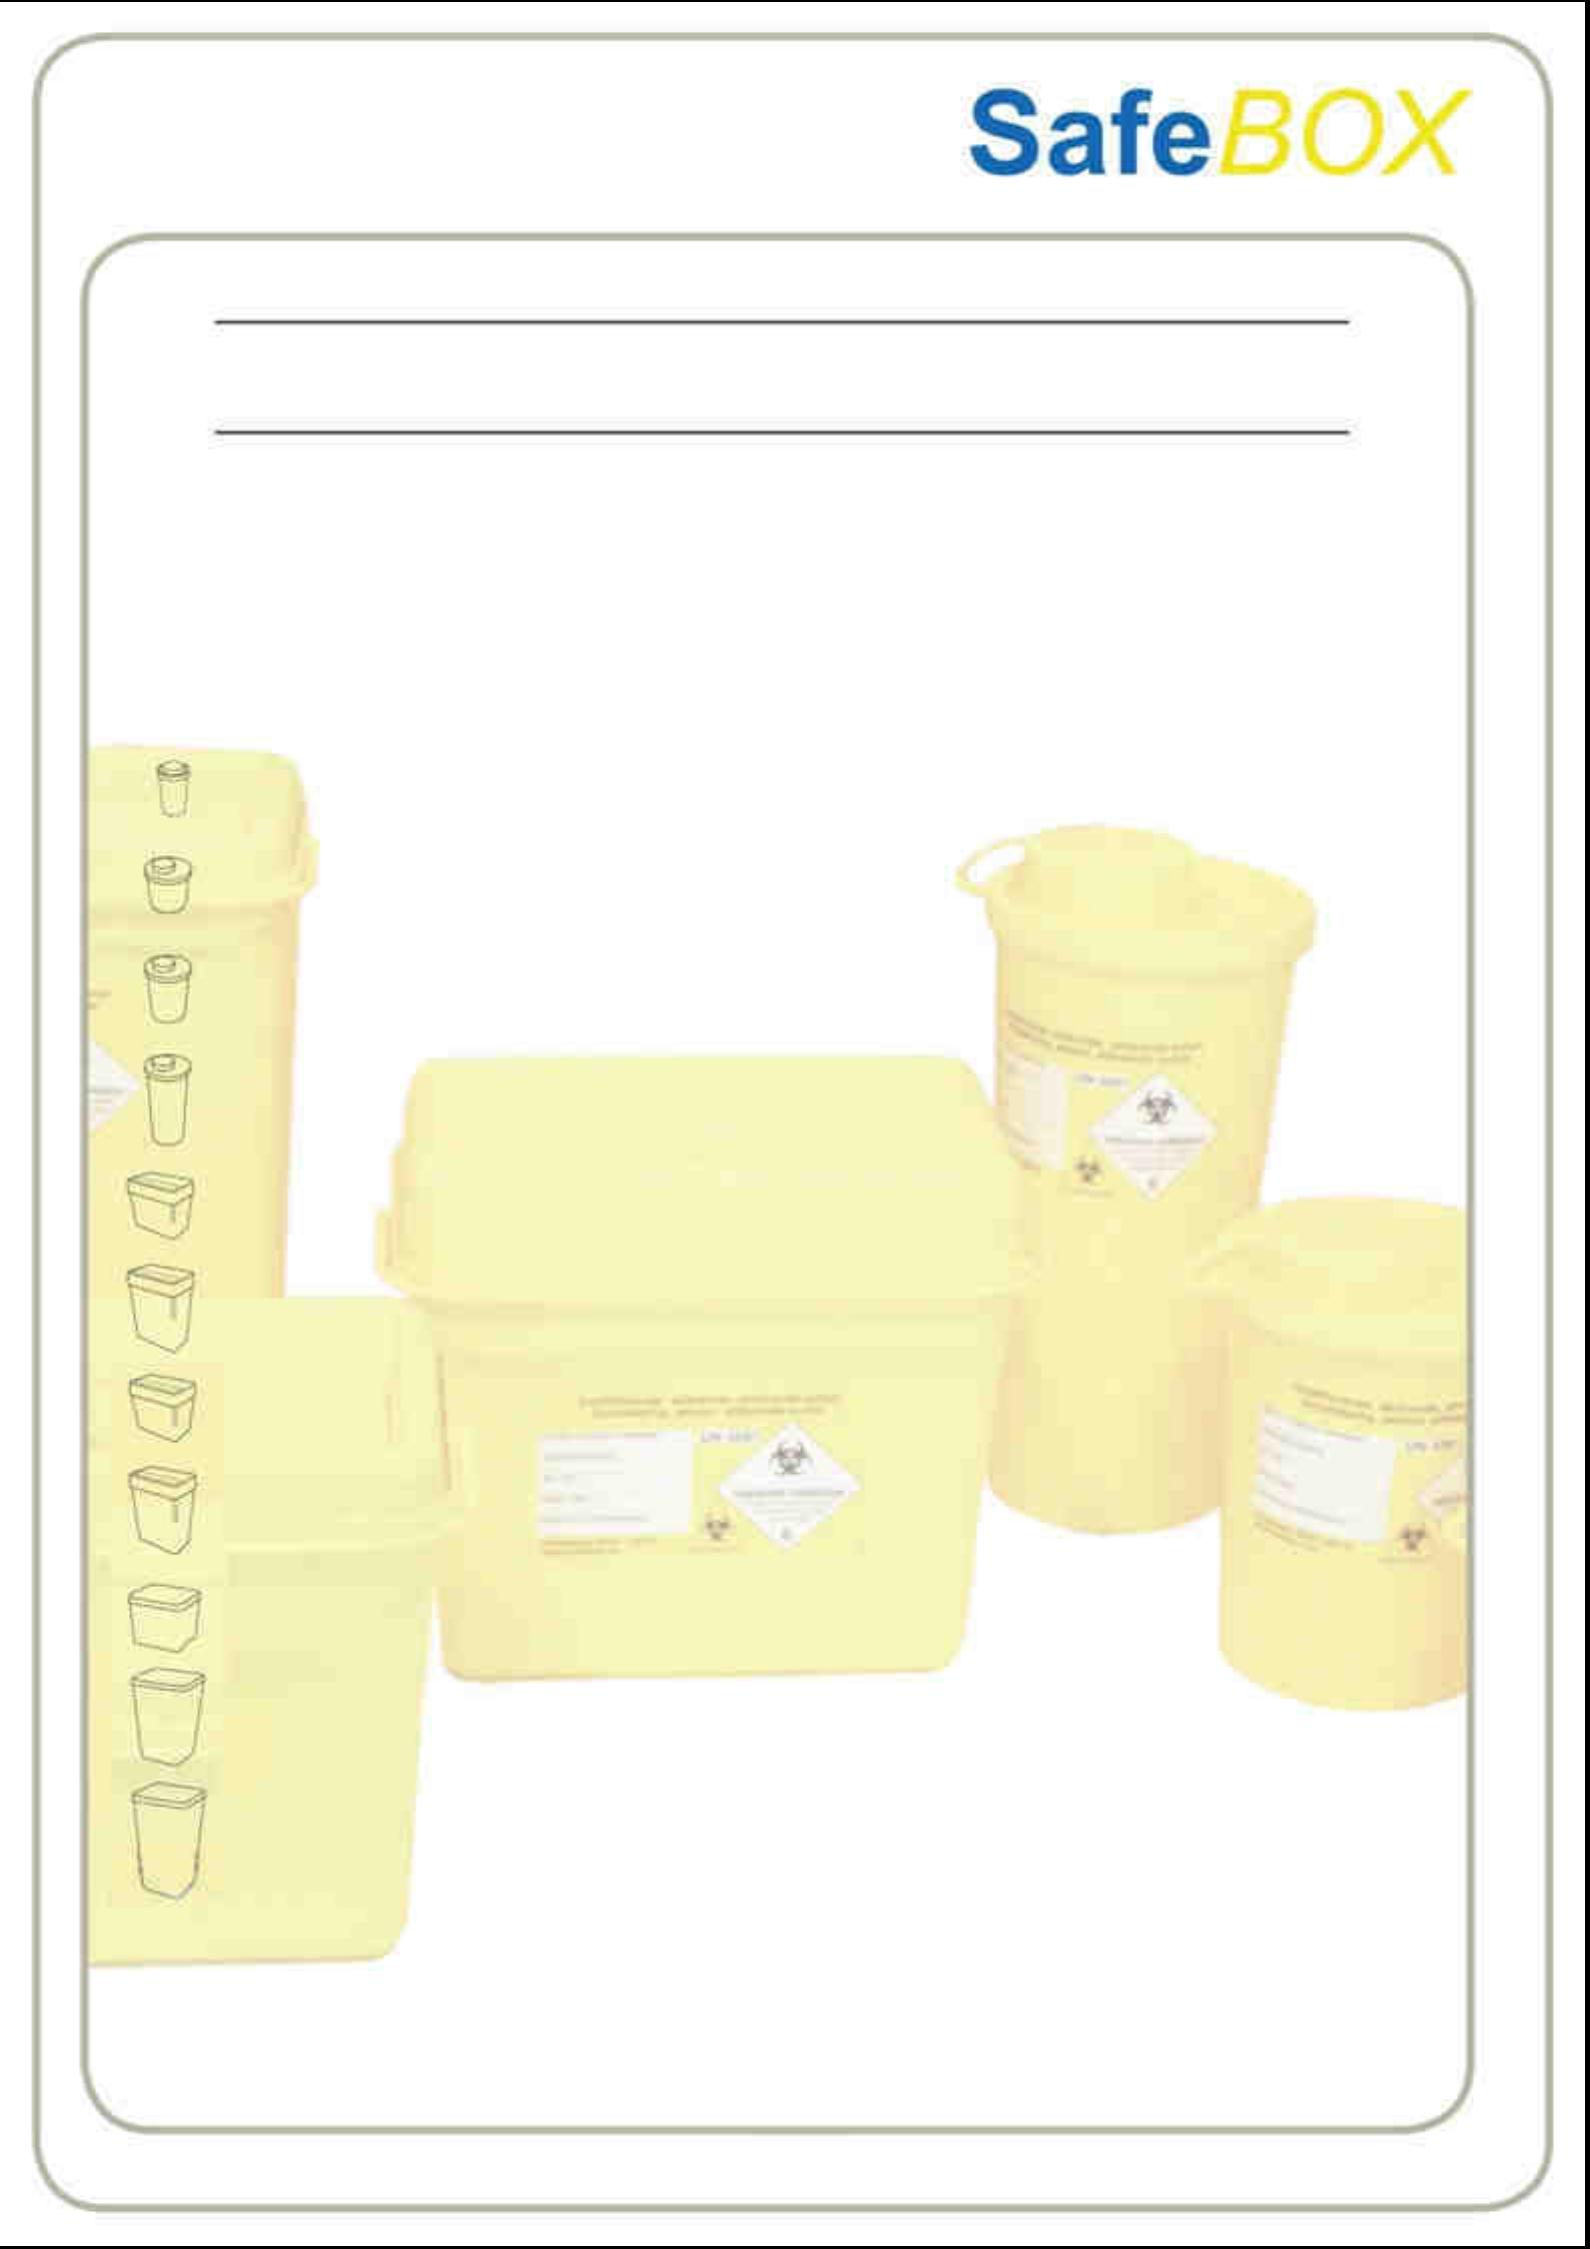 INHOUD: SafeBOX 3 Kwaliteit en omgeving 4 Naaldcontainer 0,25 liter 5 Naaldcontainer 0,50 liter 6 Naaldcontainer 1,50 liter 7 Naaldcontainer 2,20 liter 8 Naaldcontainer 3,50 liter 9 Naaldcontainer 6